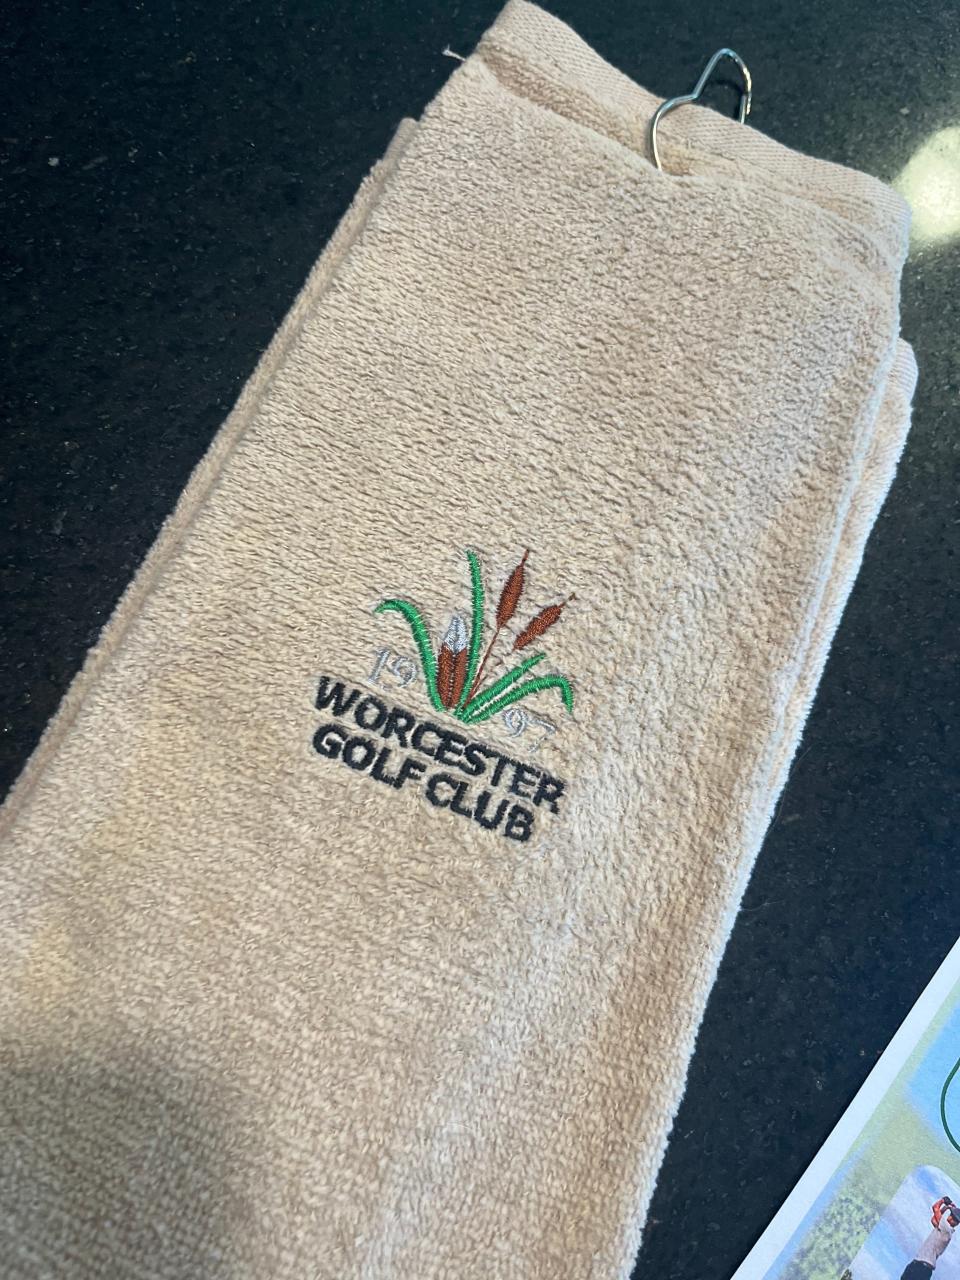 Worcester Golf Club golf towels.